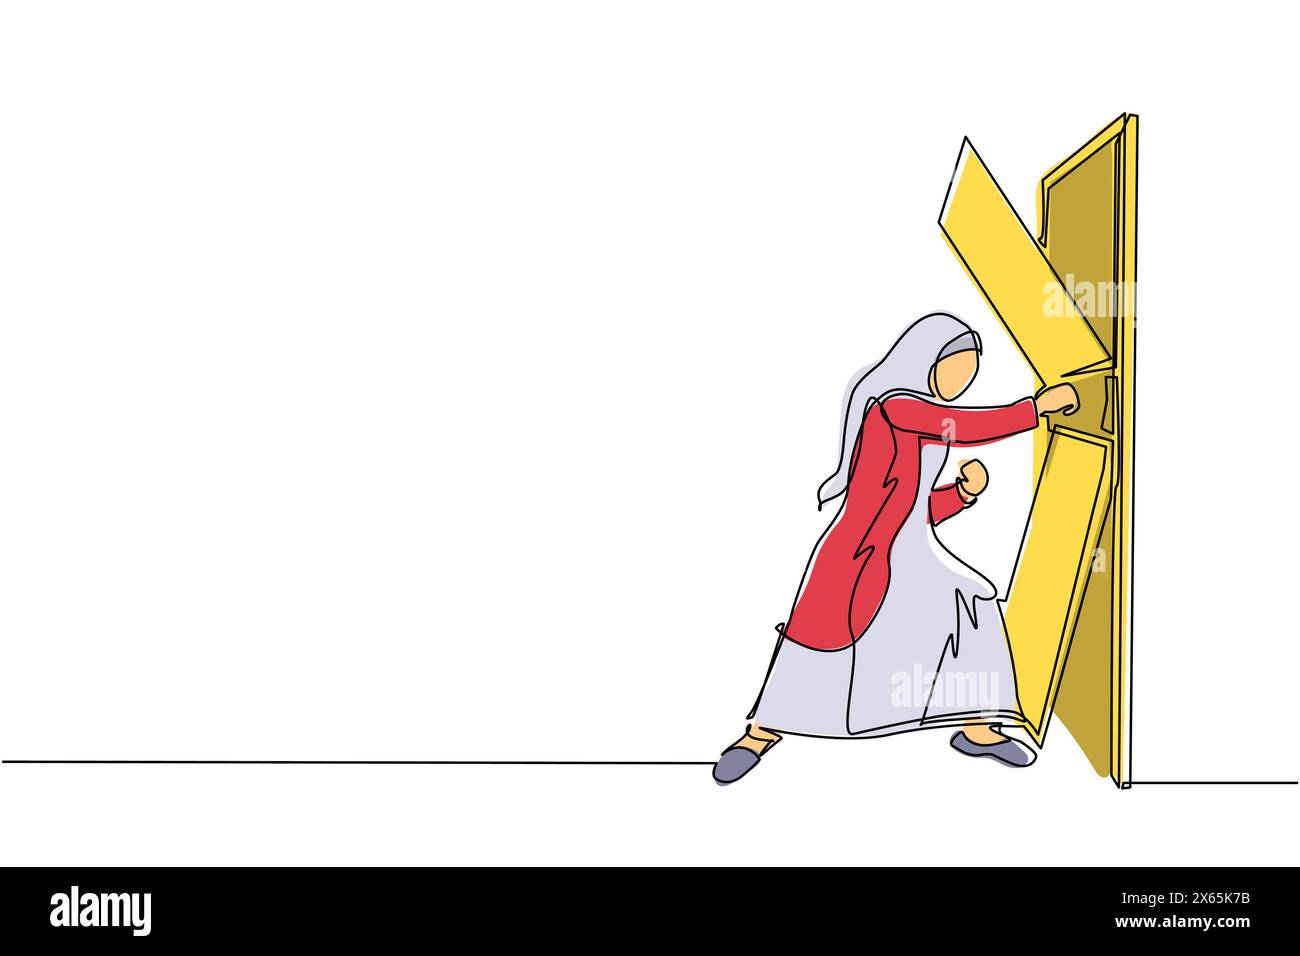 Linea singola continua che disegna una donna d'affari araba che colpisce e distrugge la porta. Eliminare le barriere di accesso, superare le sfide e distruggere l'obstac Illustrazione Vettoriale